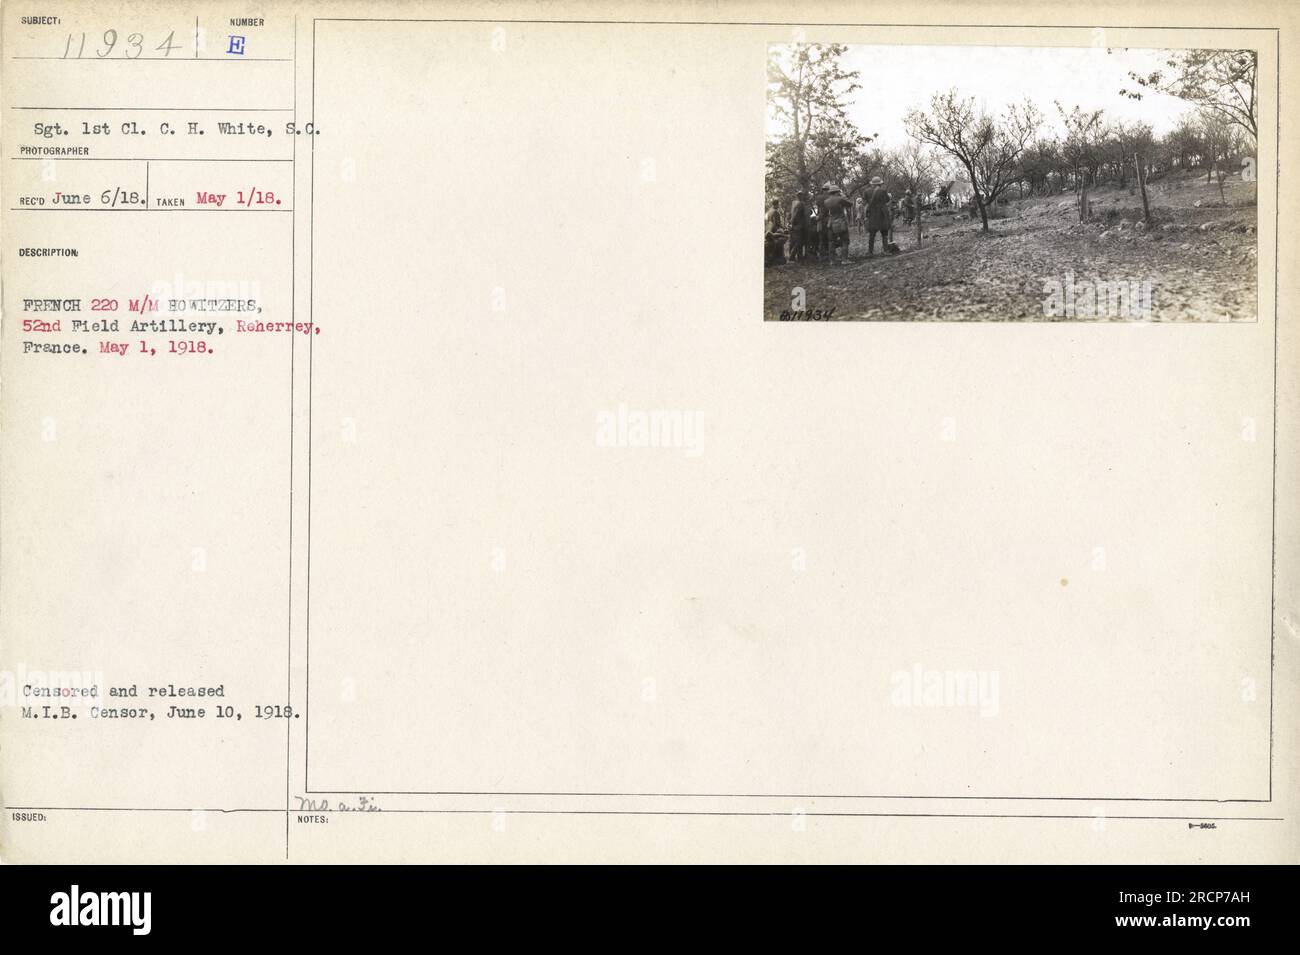 Le sergent de 1e classe C. H. White de la 52e artillerie de campagne est montré à Reherrey, France avec des obusiers français de 220 mm le 1 mai 1918. Cette photographie a été prise le 6 juin 1918 et a été censurée et publiée par le censeur du M.I.B. le 10 juin 1918. Banque D'Images